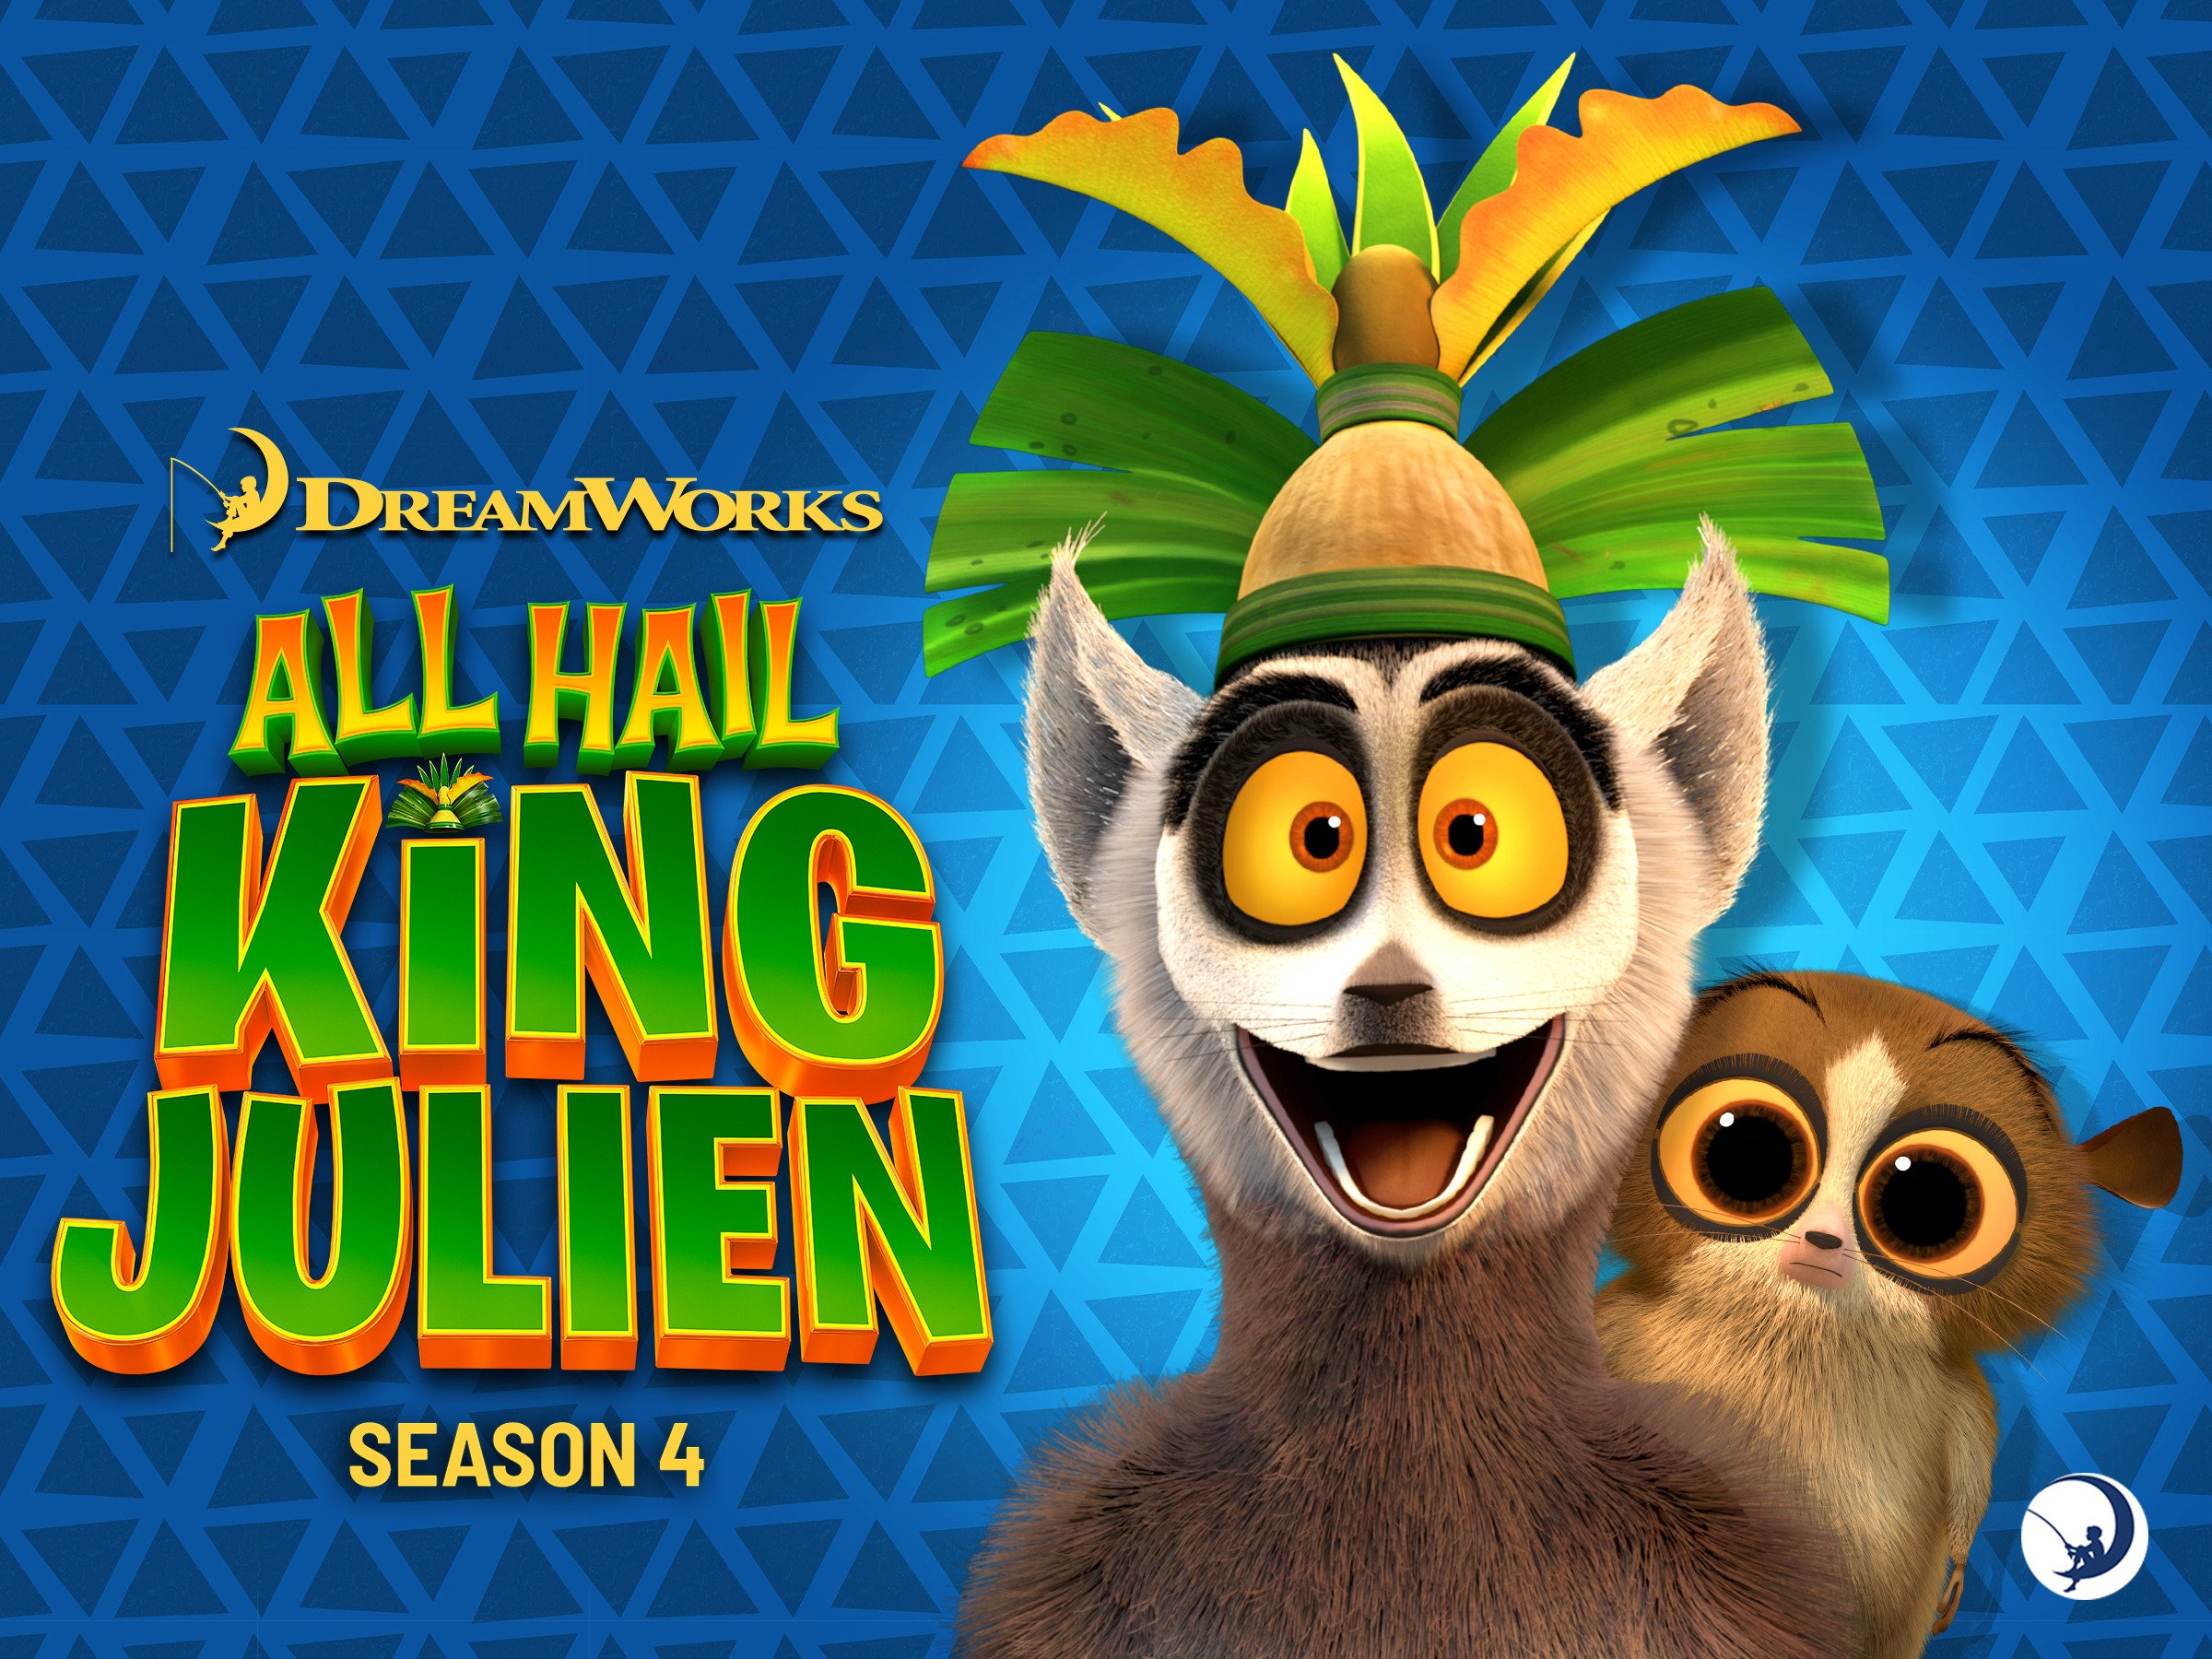 Watch All Hail King Julien, Season 4